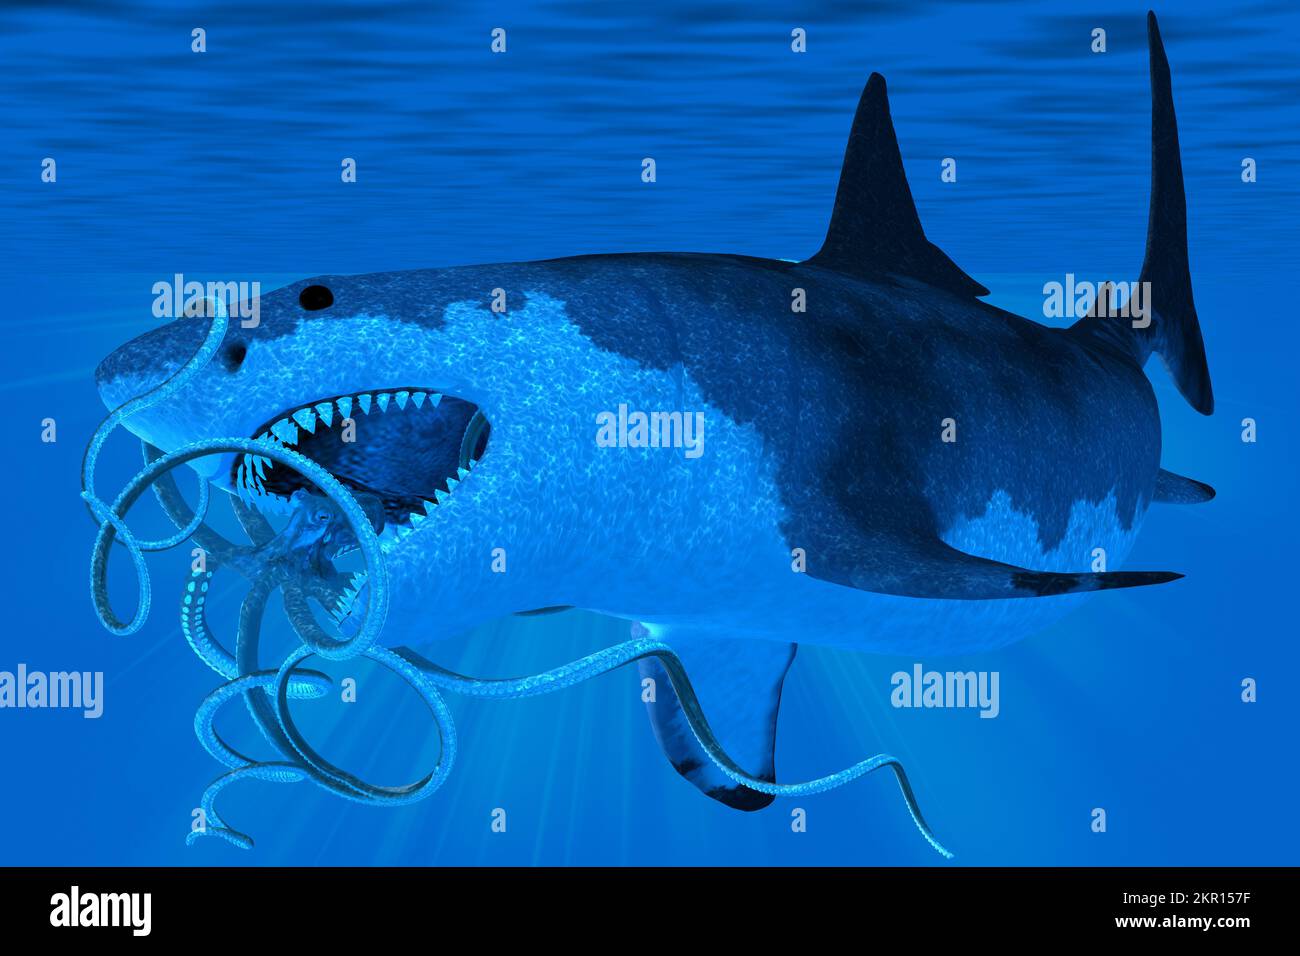 Sous l'eau un grand requin Megalodon essaie de manger un octopus géant pendant la période du Pléistocène. Banque D'Images